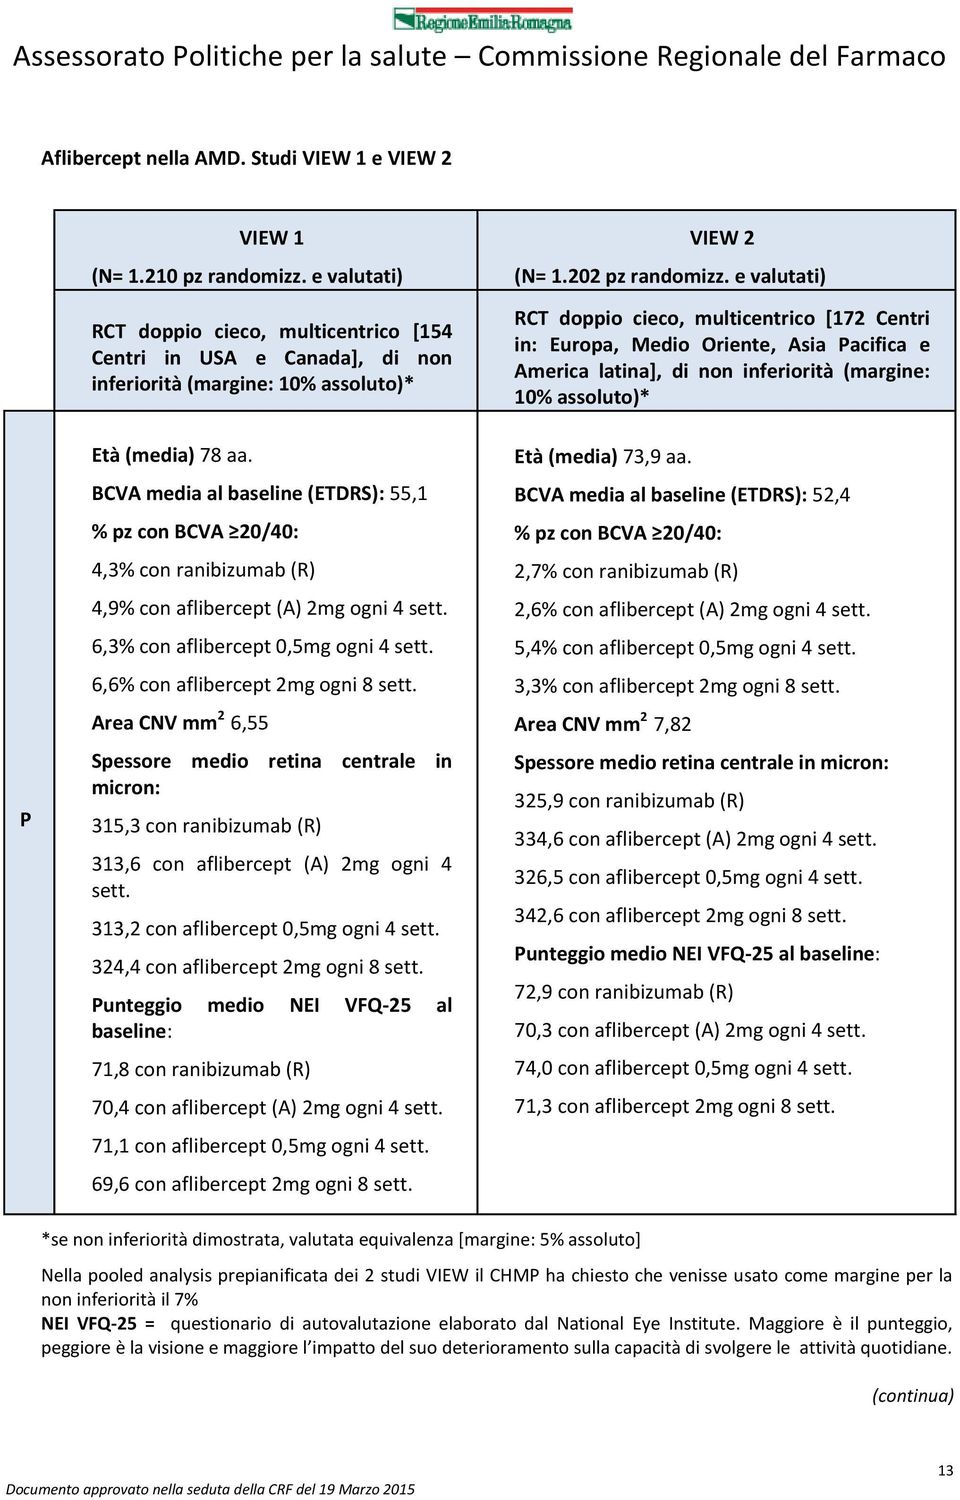 BCV media al baseline (ETDRS): 55,1 % pz con BCV 20/40: 4,3% con ranibizumab (R) 4,9% con aflibercept () 2mg ogni 4 sett. 6,3% con aflibercept 0,5mg ogni 4 sett. 6,6% con aflibercept 2mg ogni 8 sett.